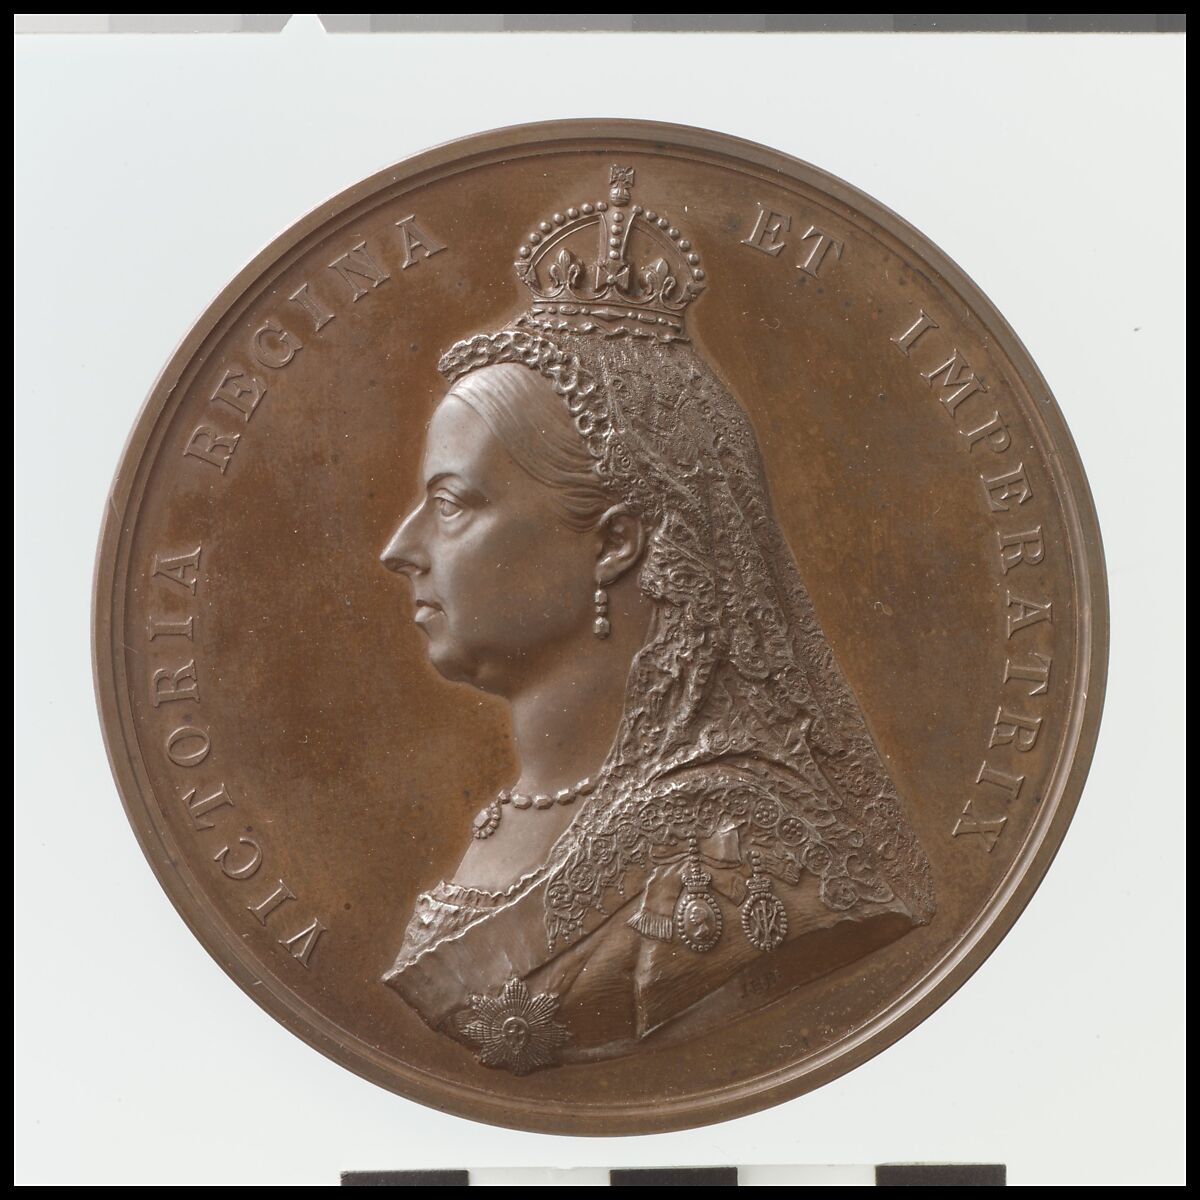 Golden Jubilee Medal of Queen Victoria, Joseph Edgar Boehm (British (born Austria), Vienna 1834–1890 London), Bronze, British 